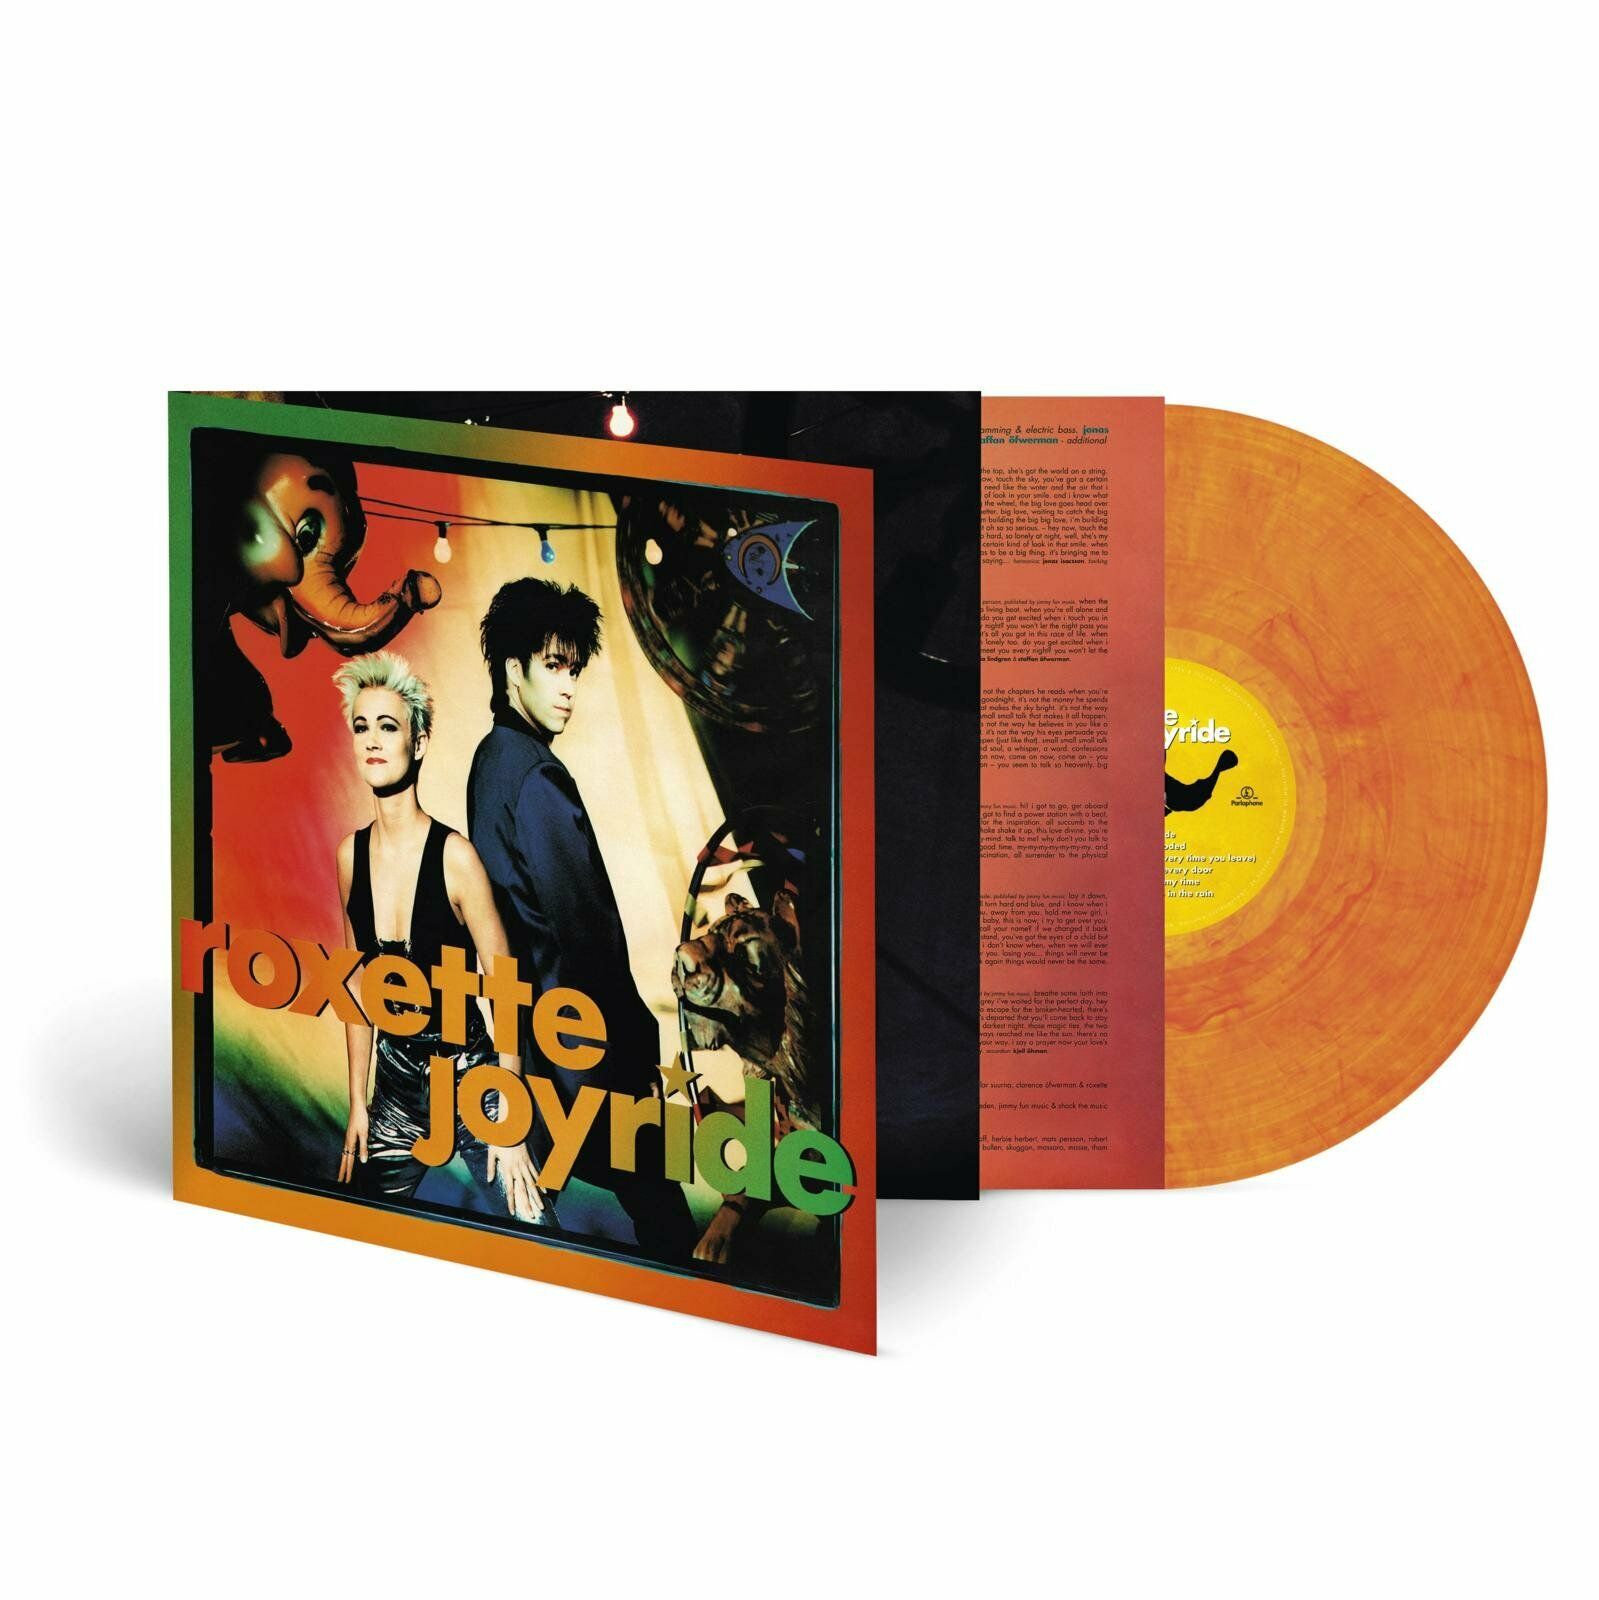 Виниловая пластинка Roxette, Joyride (coloured) (5054197107177) виниловая пластинка roxette joyride box set